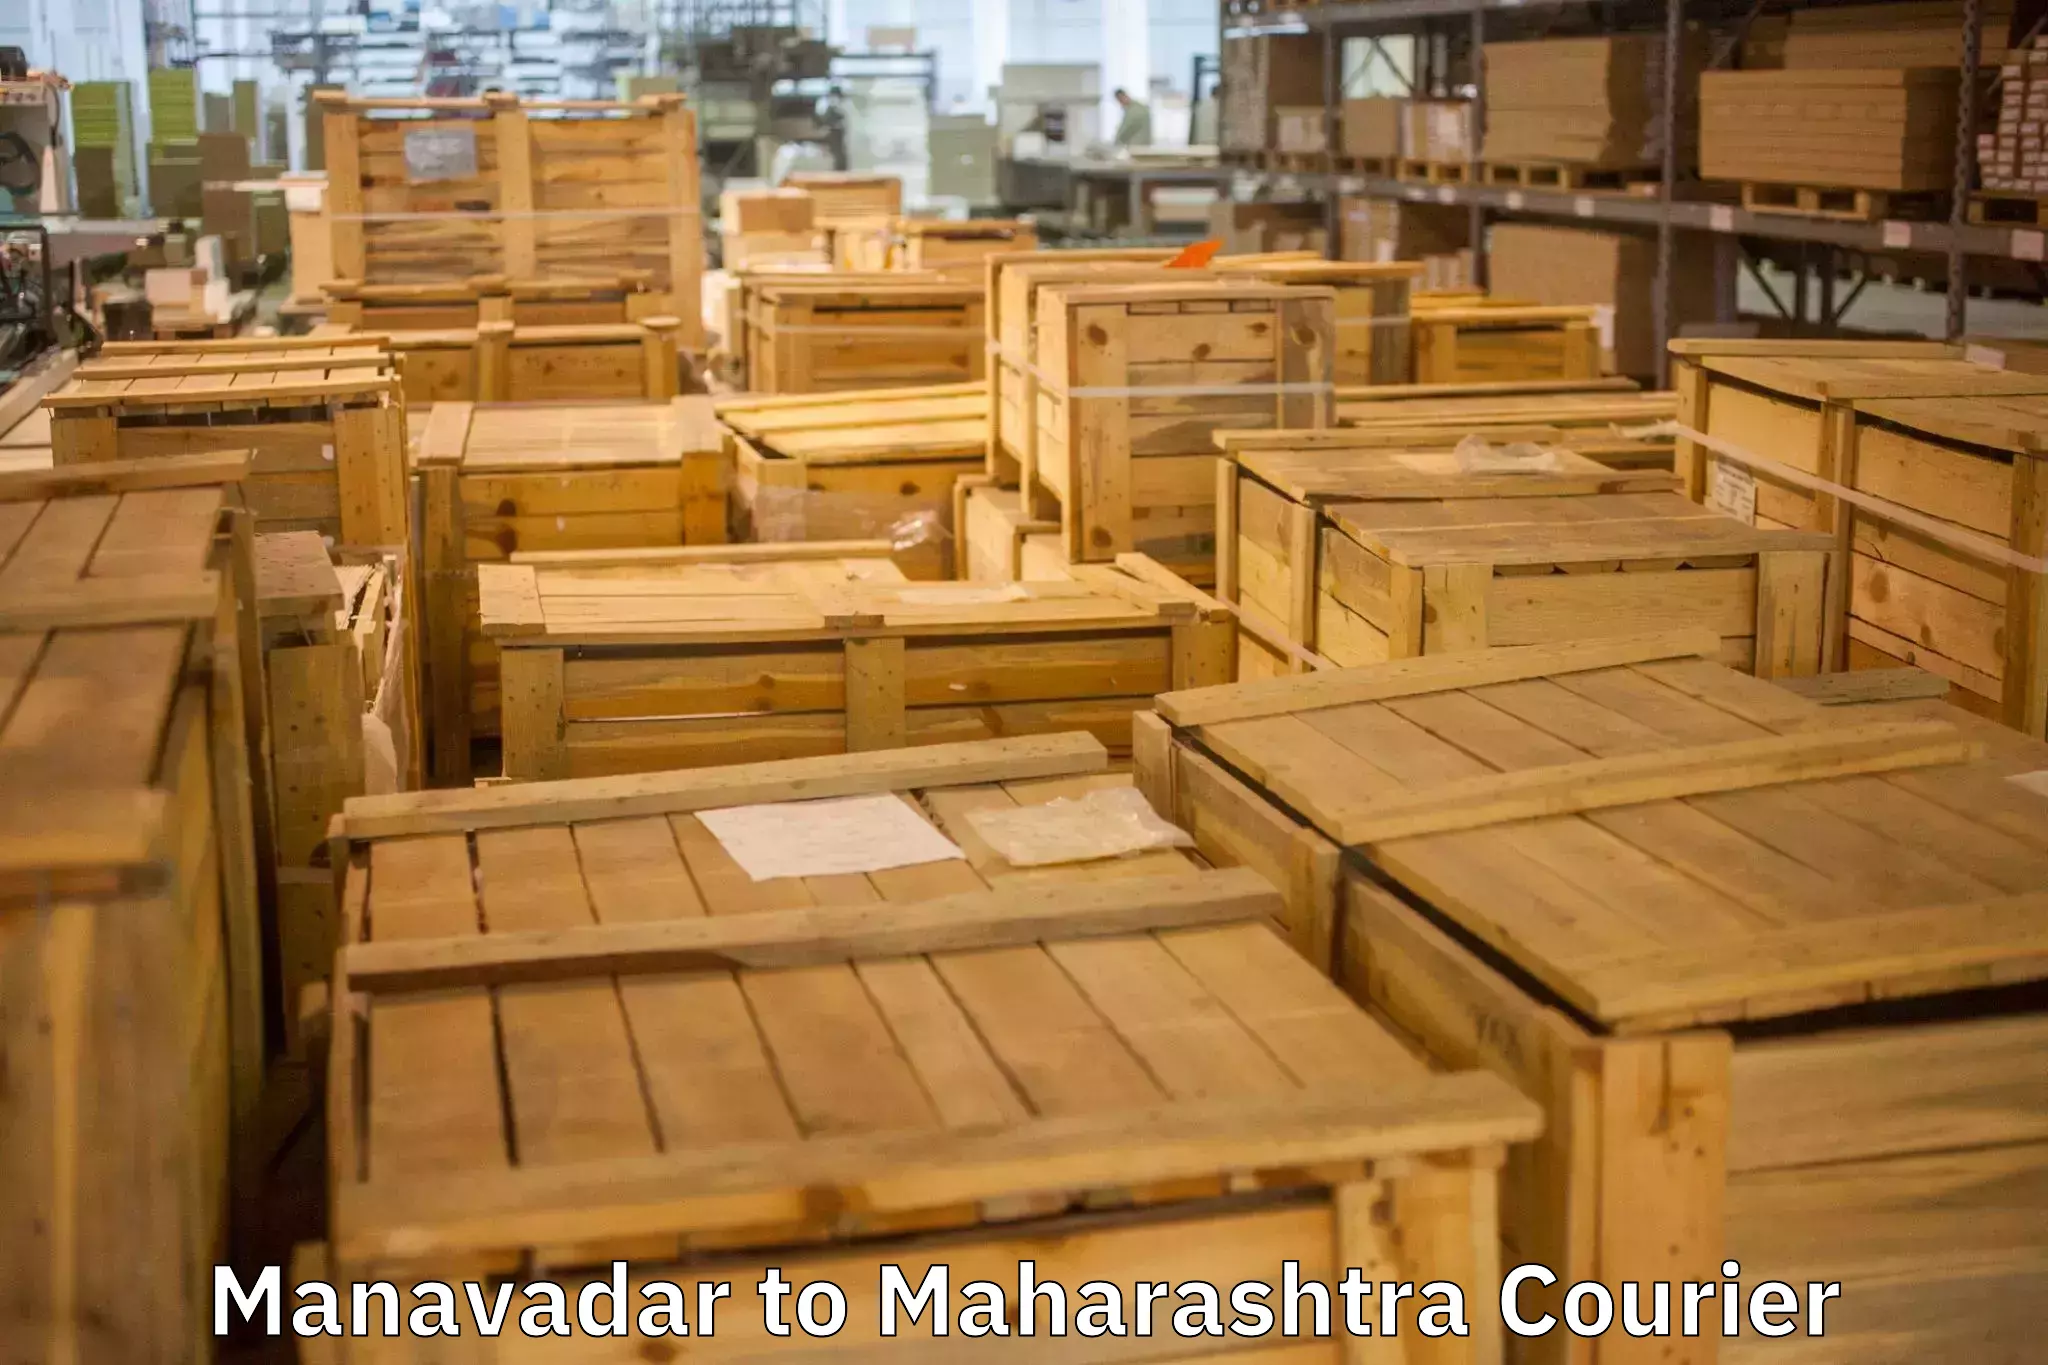 Furniture moving experts Manavadar to Worli